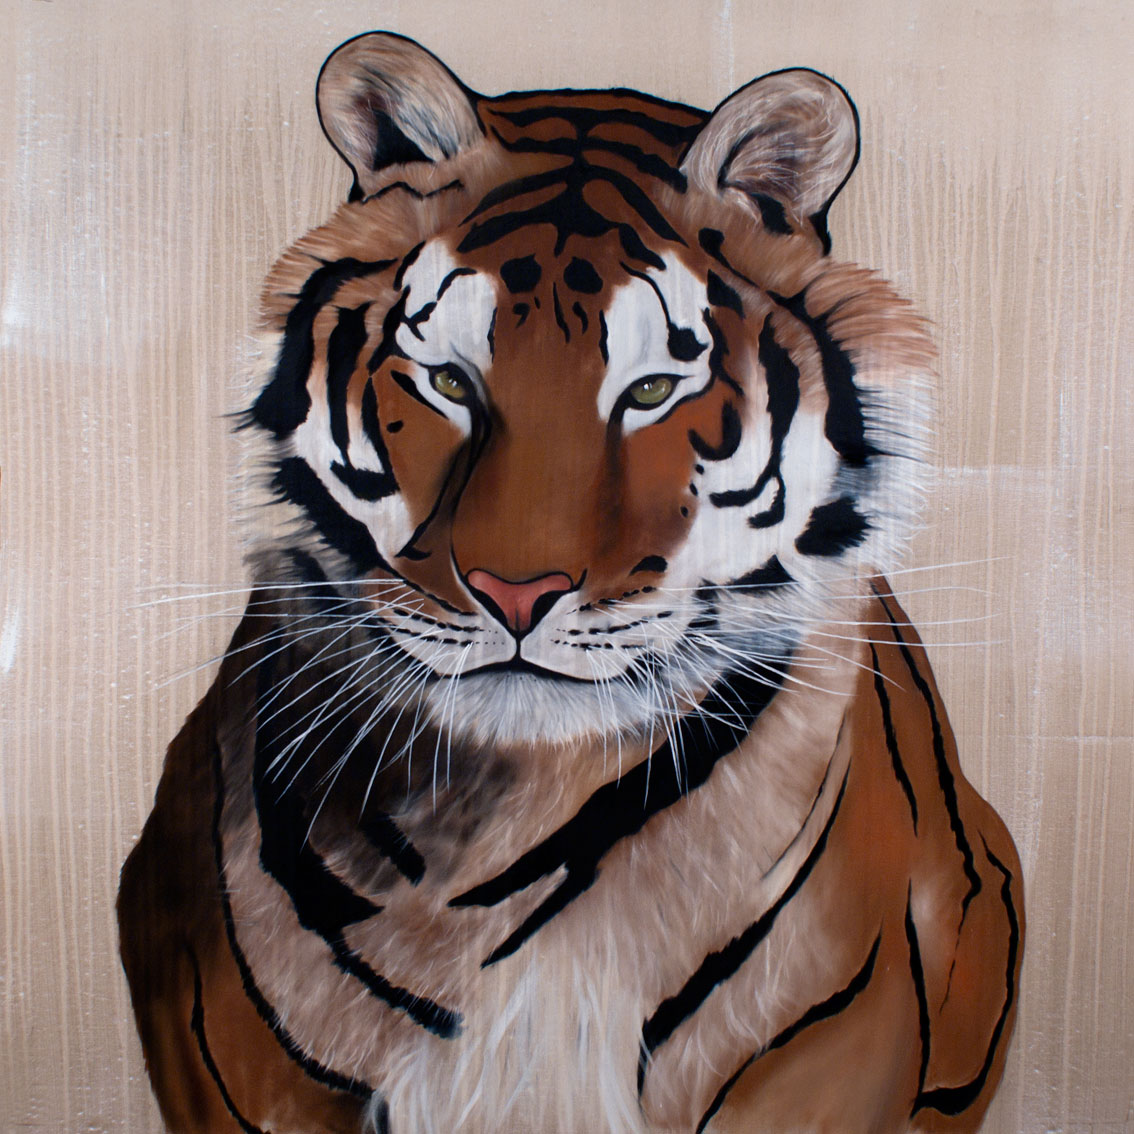 ROYAL TIGER tigre Thierry Bisch artiste peintre contemporain animaux tableau art décoration biodiversité conservation 